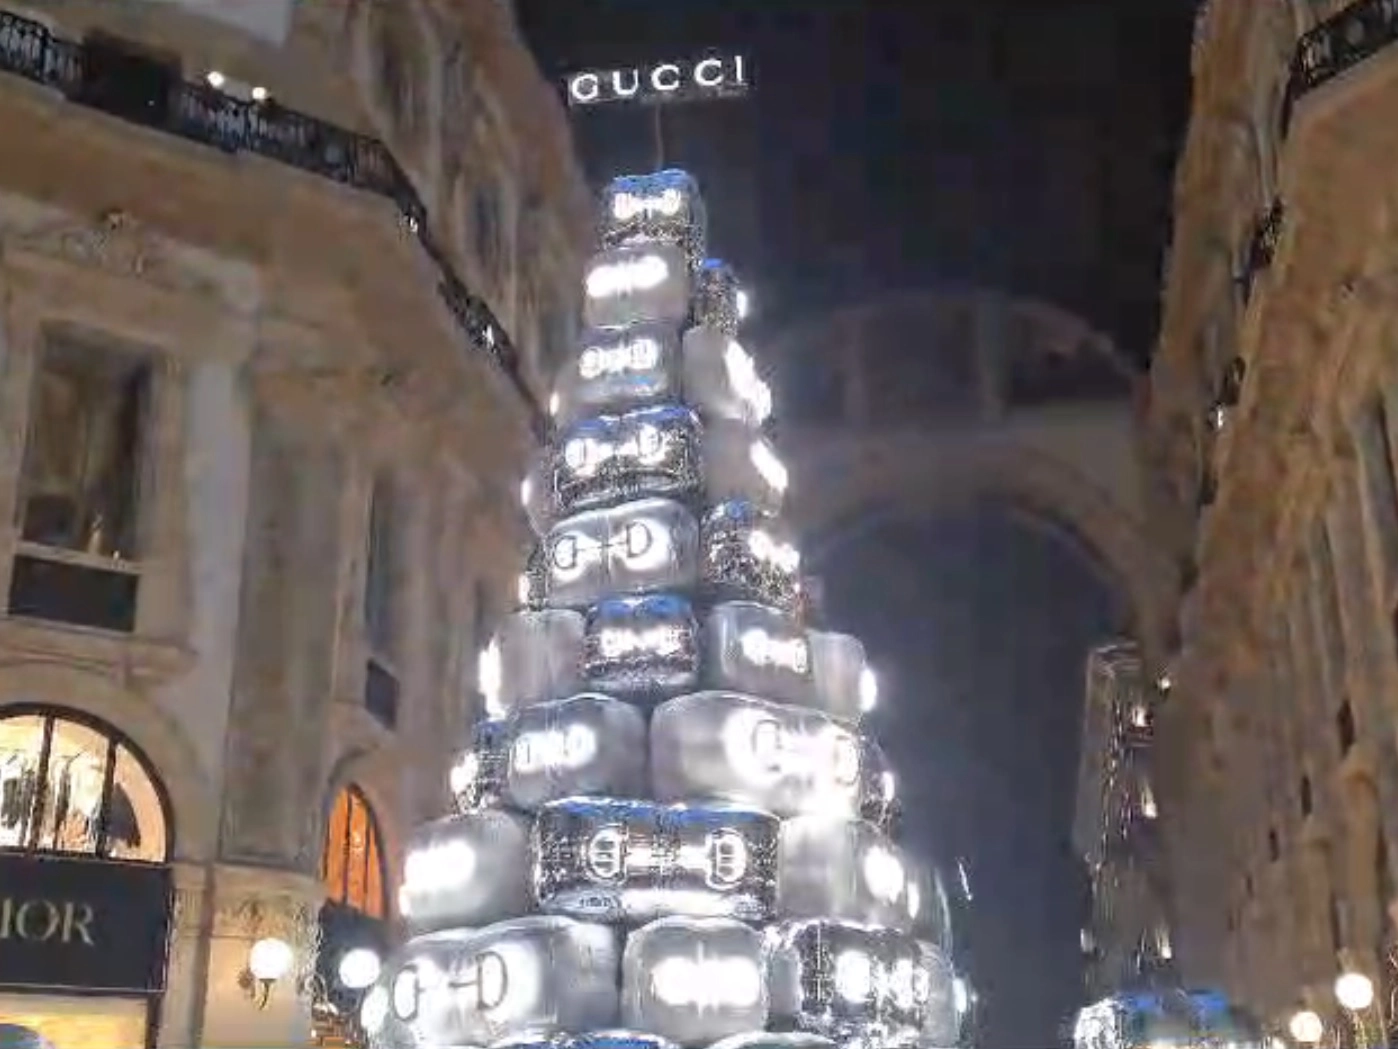 L'albero di Gucci nell'Ottagono della Galleria Vittorio Emanuele